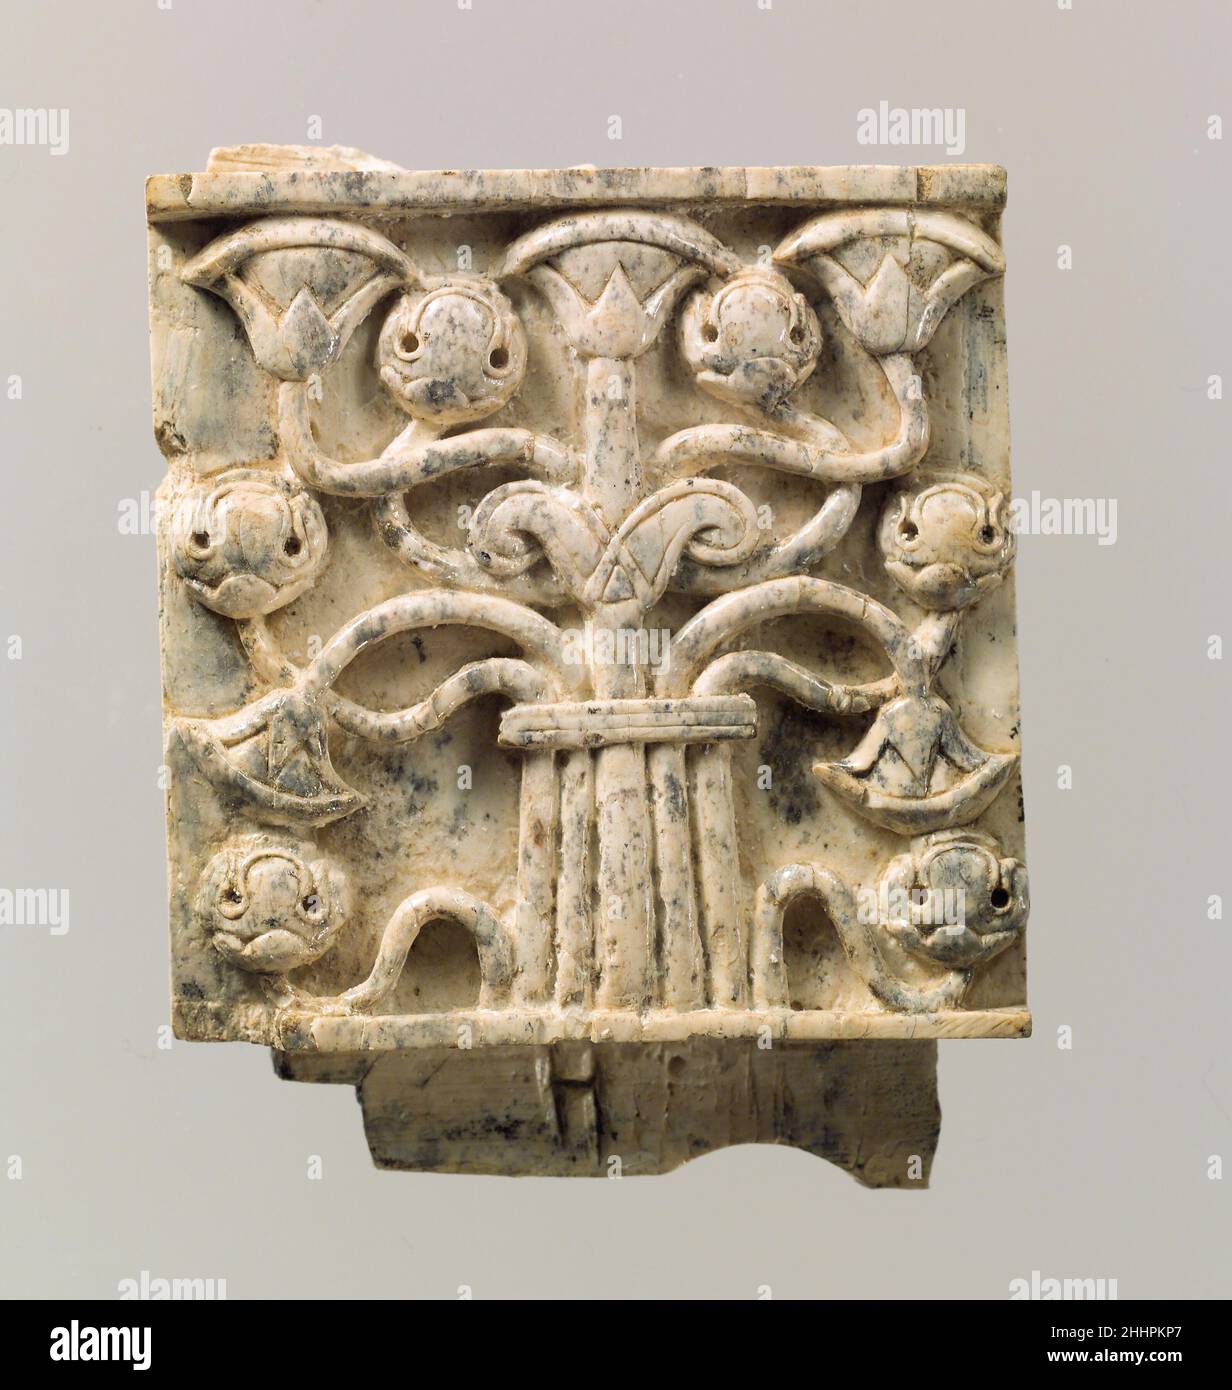 Möbelplatte in Relief mit stilisiertem Baum geschnitzt Ca. 8th.–7th. Jahrhundert v. Chr. Assyrisch Diese Tafel wurde in einem Lagerraum in Fort Shalmaneser, einem königlichen Gebäude in Nimrud, gefunden, in dem Beute und Tribut aufbewahrt wurden, die von den Assyrern während des Militärfeldzuges gesammelt wurden. Es zeigt einen stilisierten Baum, der fächerartige Papyrus-Blüten und stilisierte abgerundete Blüten kombiniert, die Granatäpfel darstellen können. Aus einem zentralen Stamm strahlt ein zartes Netz von elf Zweigen aus, das in der Mitte durch ein horizontales Element zusammengebunden ist; oben entspringt ein Paar gewellter, blattähnlicher Formen, genannt Voluten, aus dem Stockfoto